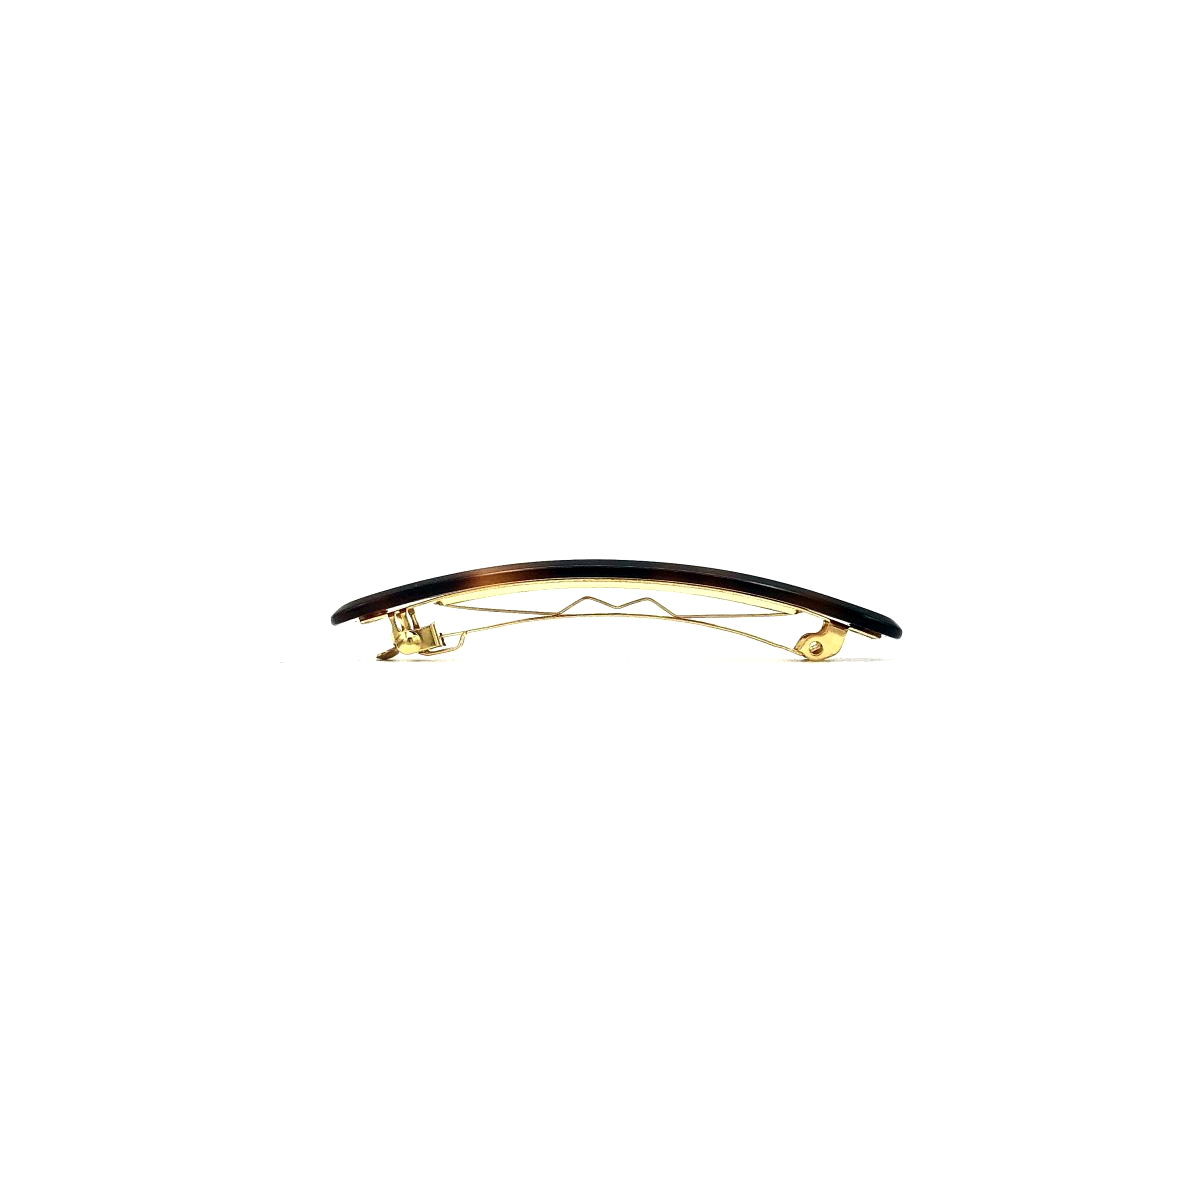 Haarspange rotbraun - klein, flach - 7,7 cm